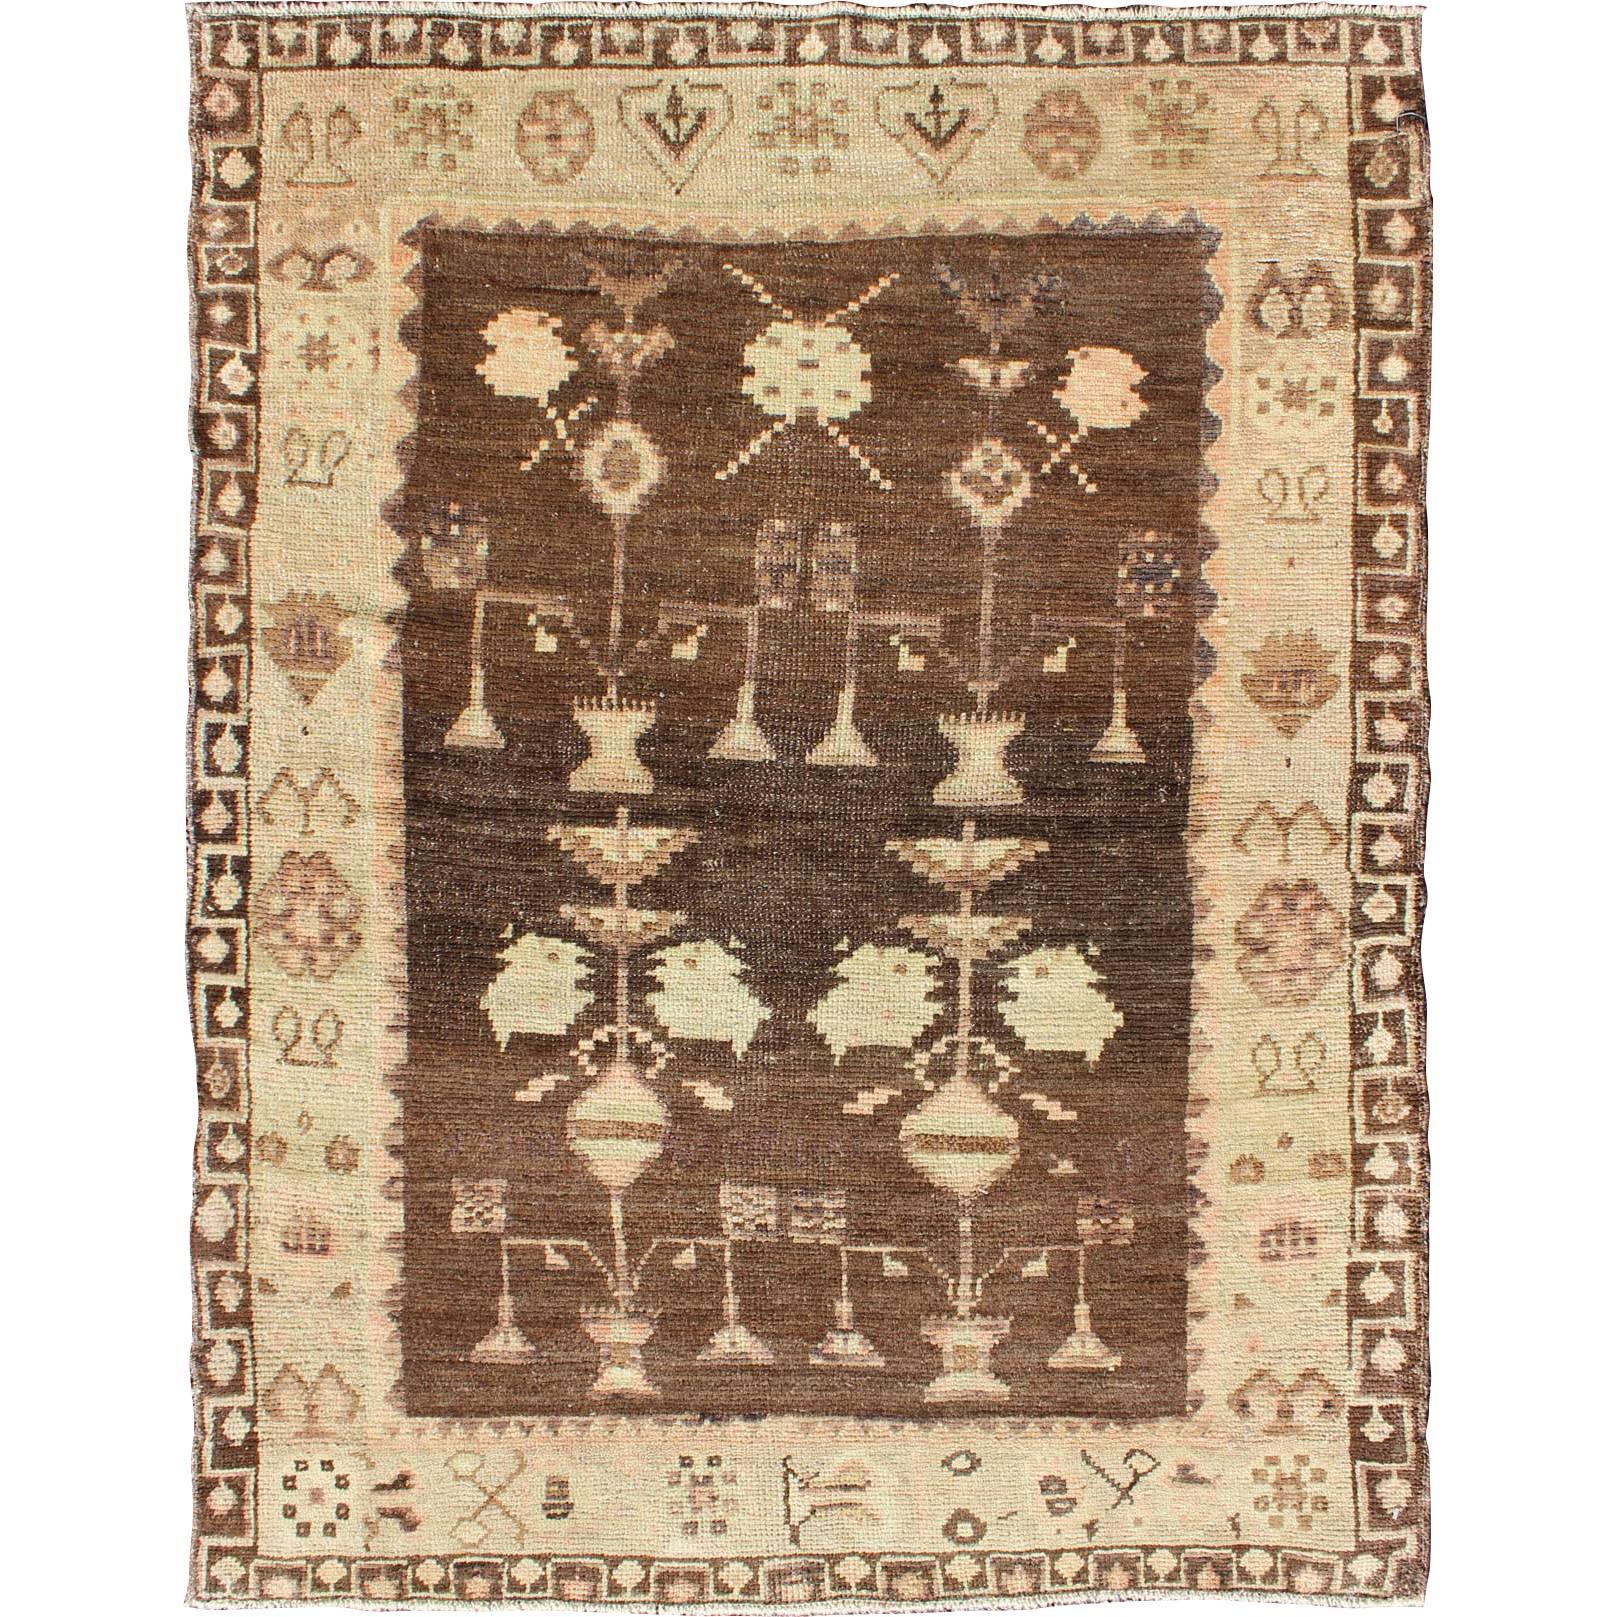 Vintage Turkish Oushak Carpet with Tribal Design Set on Brown Background